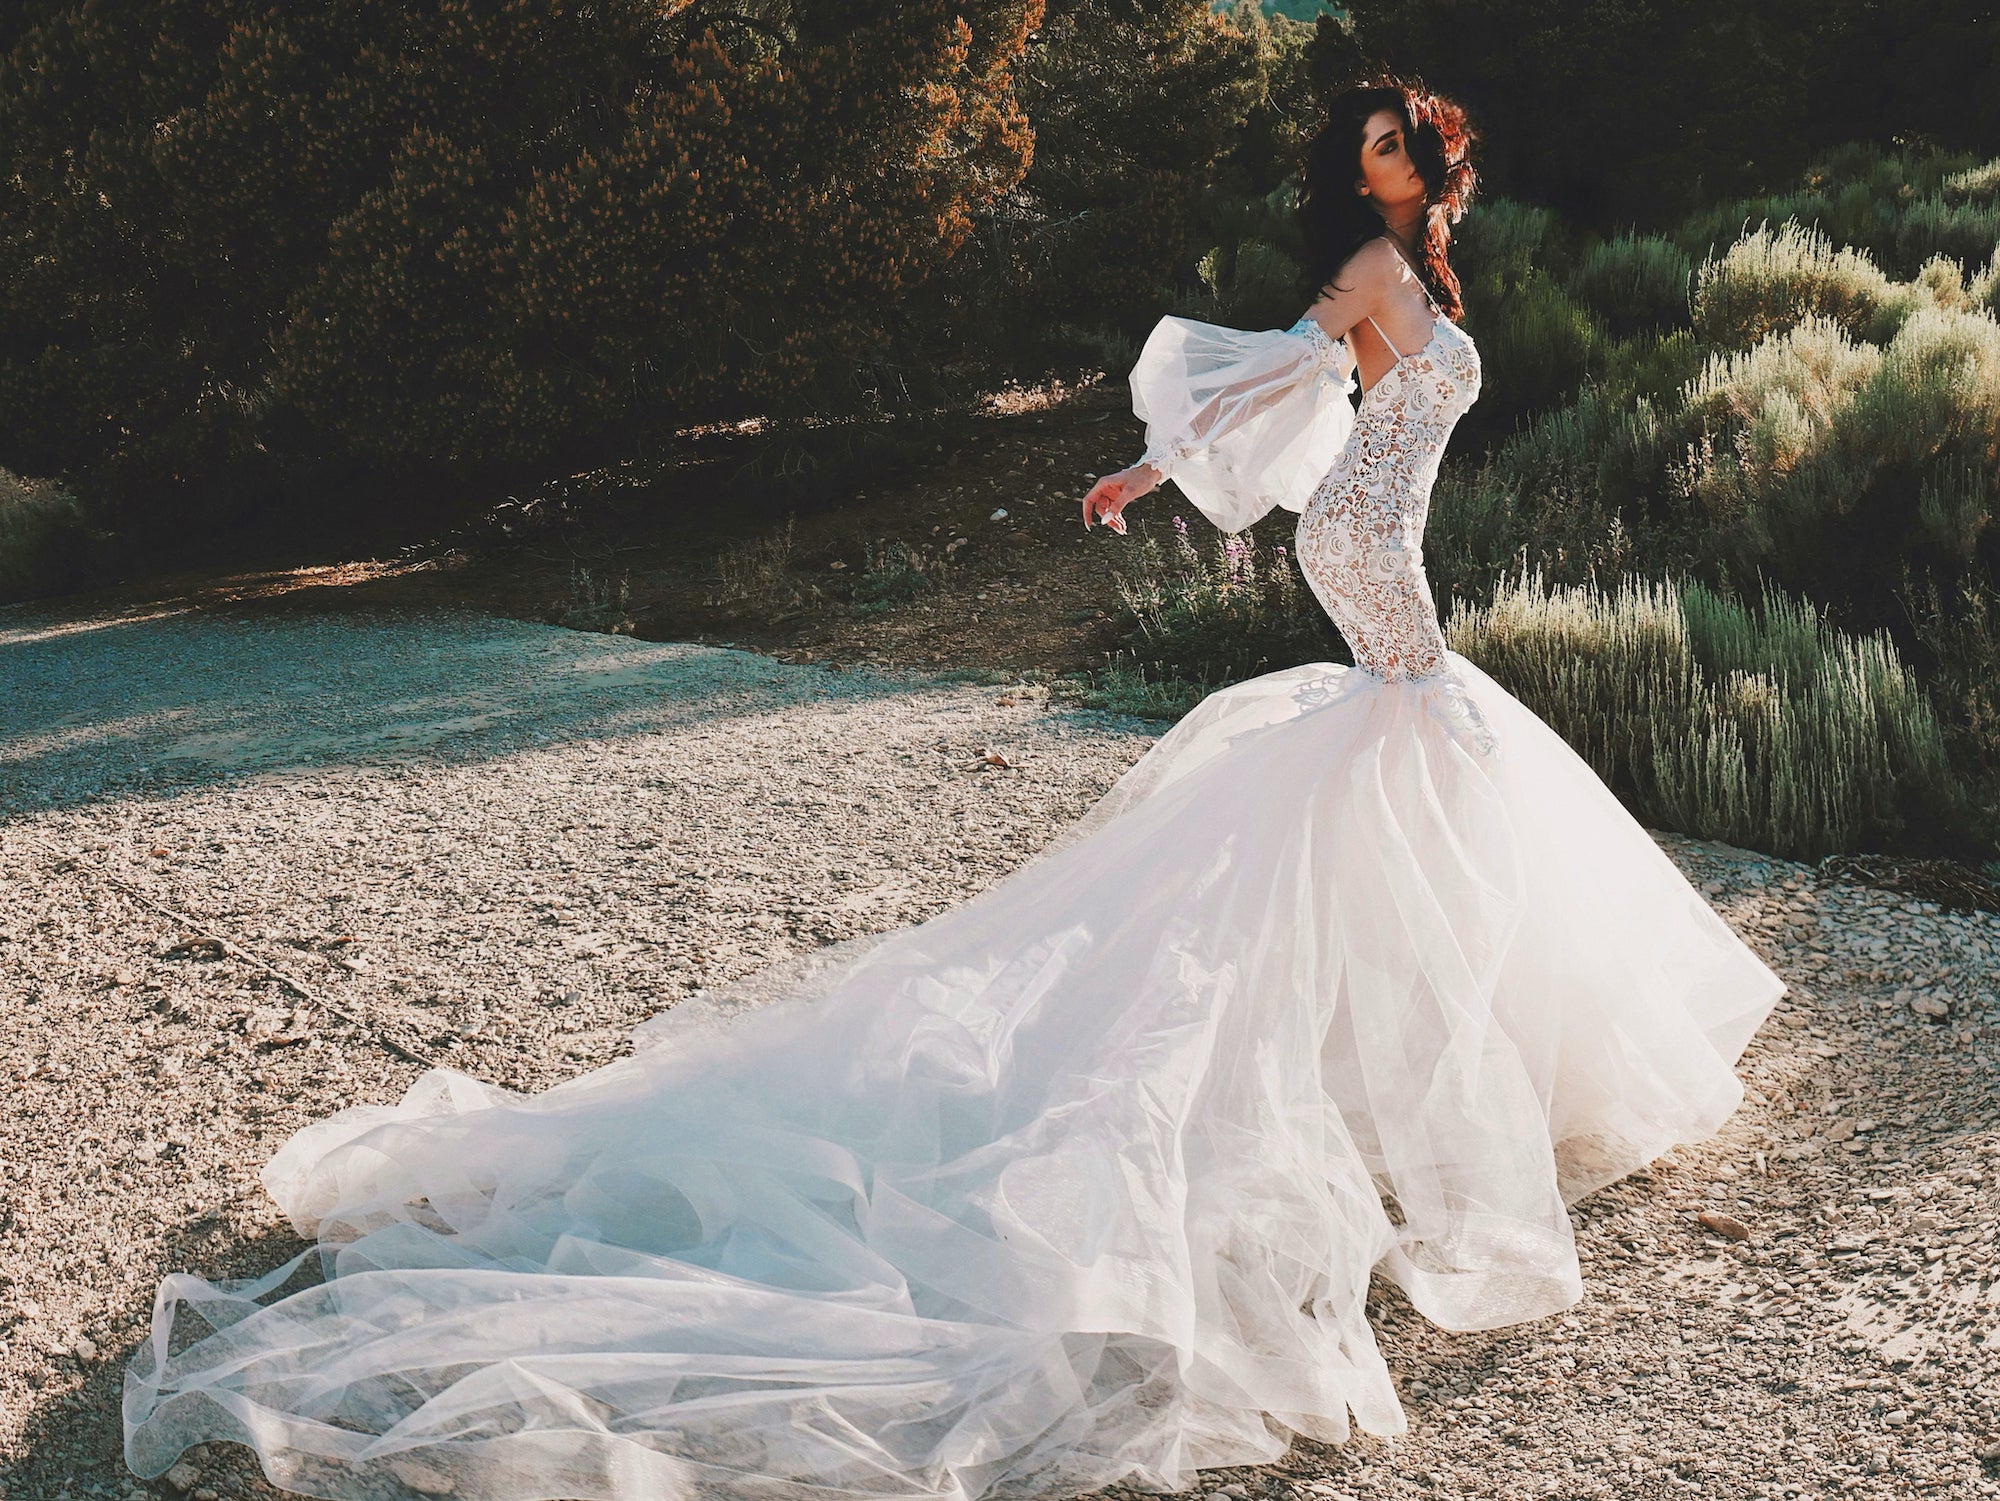 Arcadia mermaid wedding dress with detachable sleeves by Lauren Elaine Los Angeles